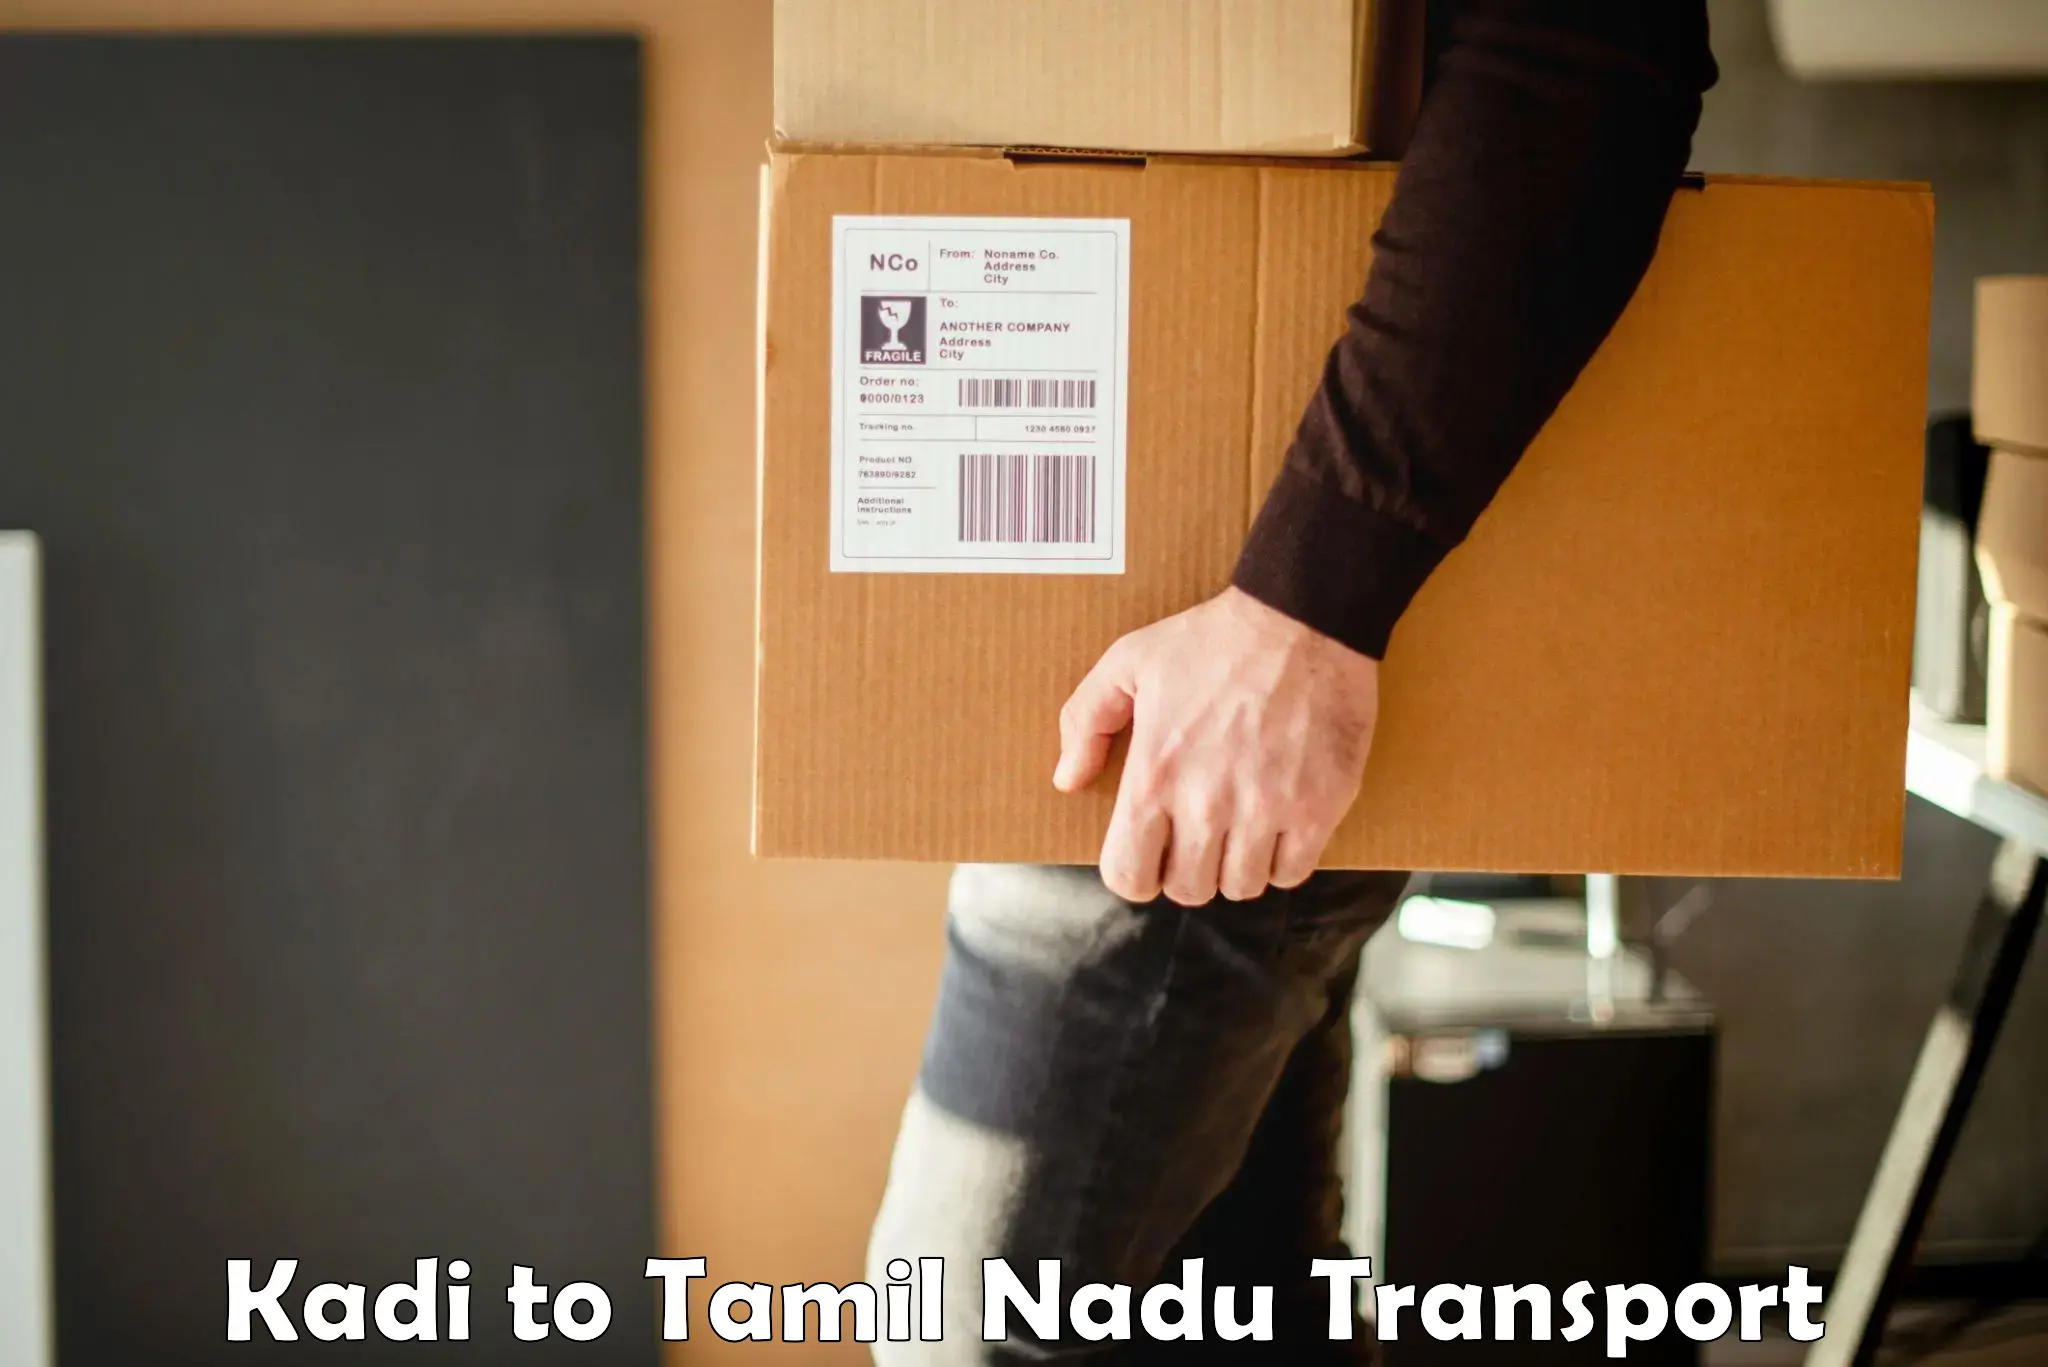 Daily transport service Kadi to Madurai